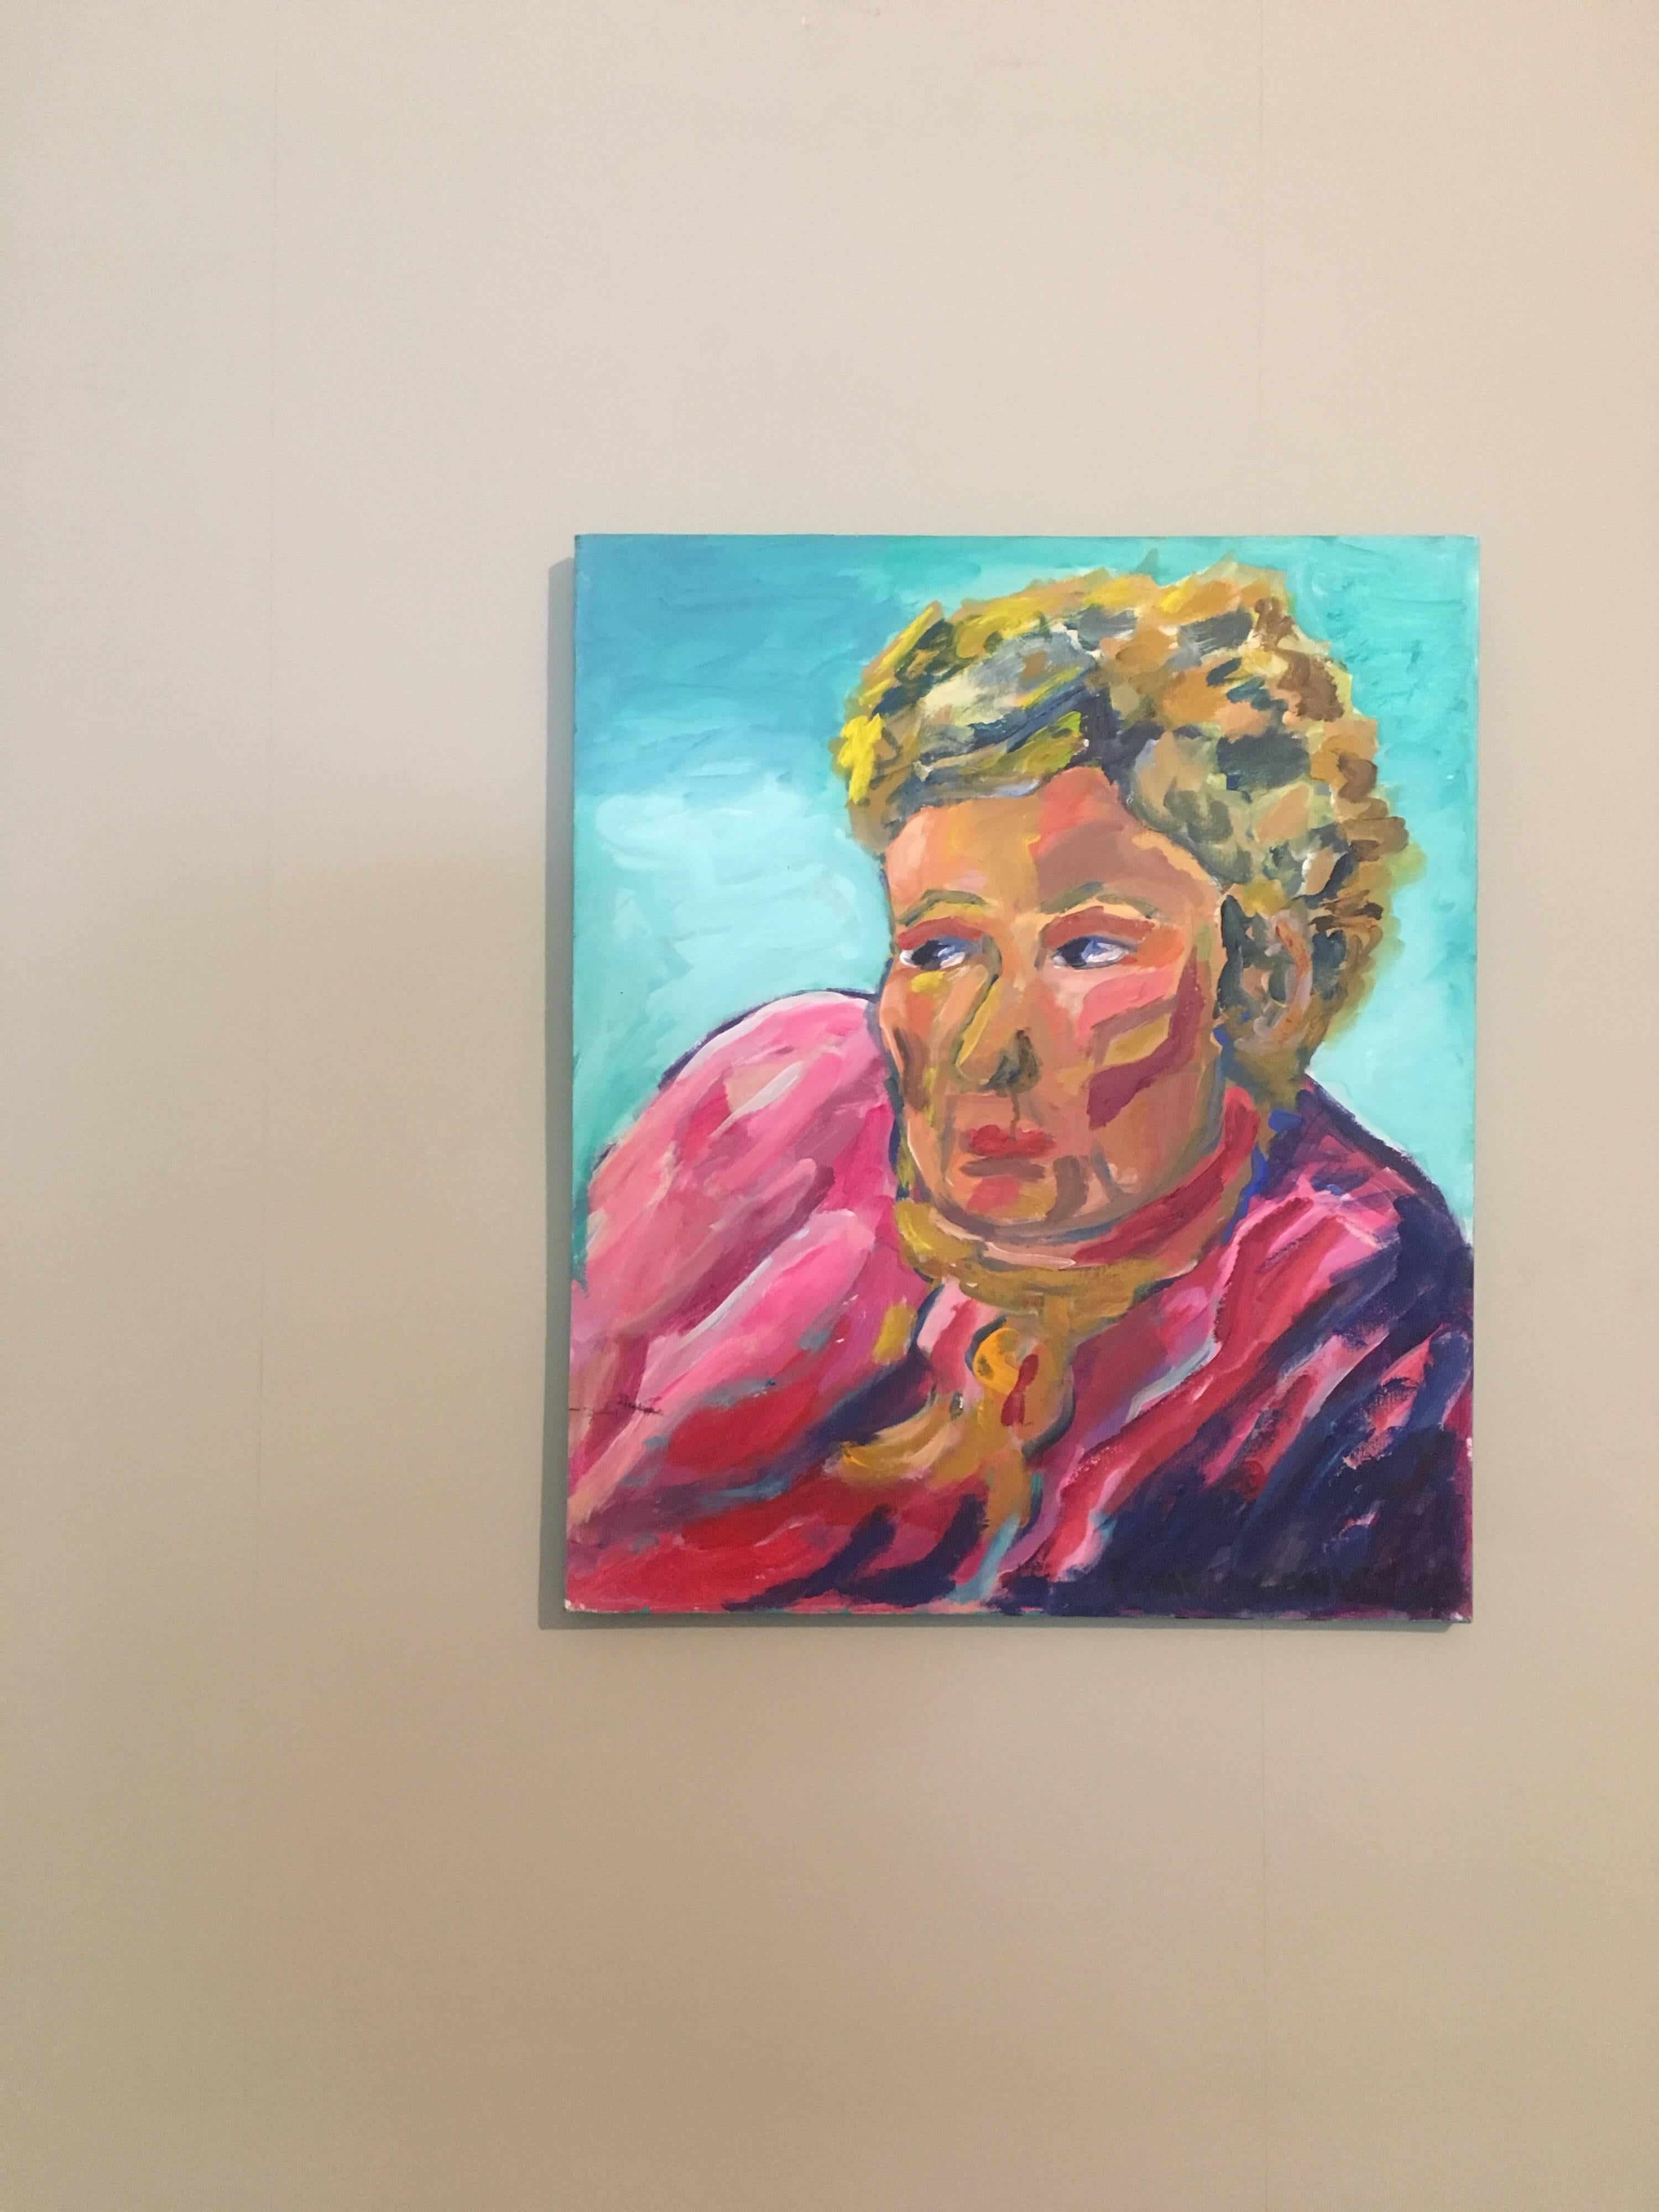 Porträt einer rosafarbenen Dame, britische Künstlerin – Painting von Pamela Cawley